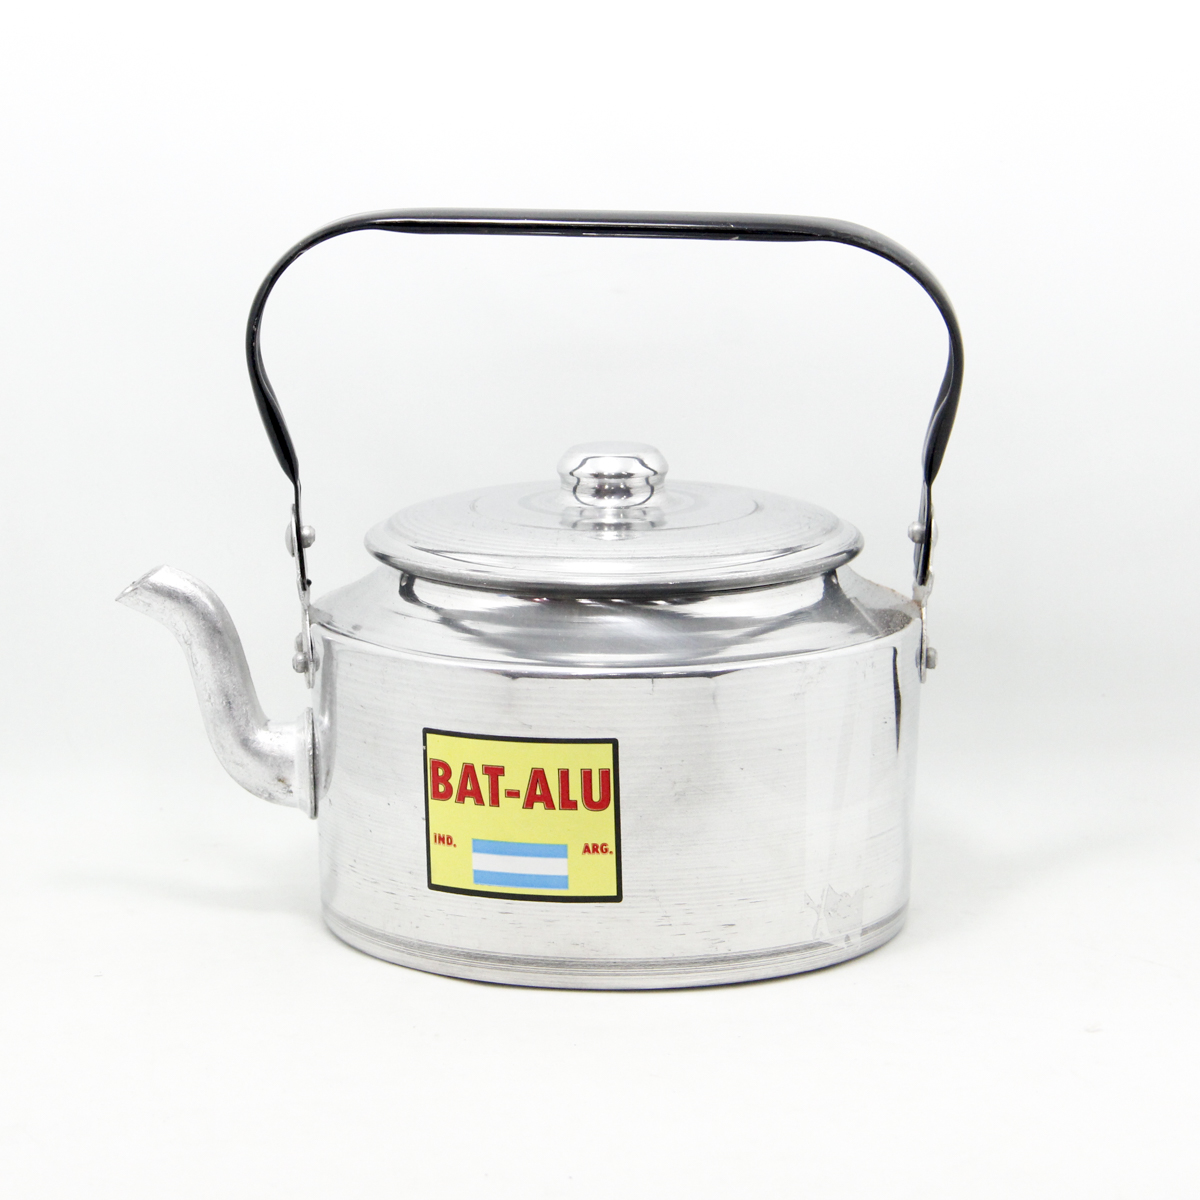 Pava americana Batalu - aluminio - 16cm